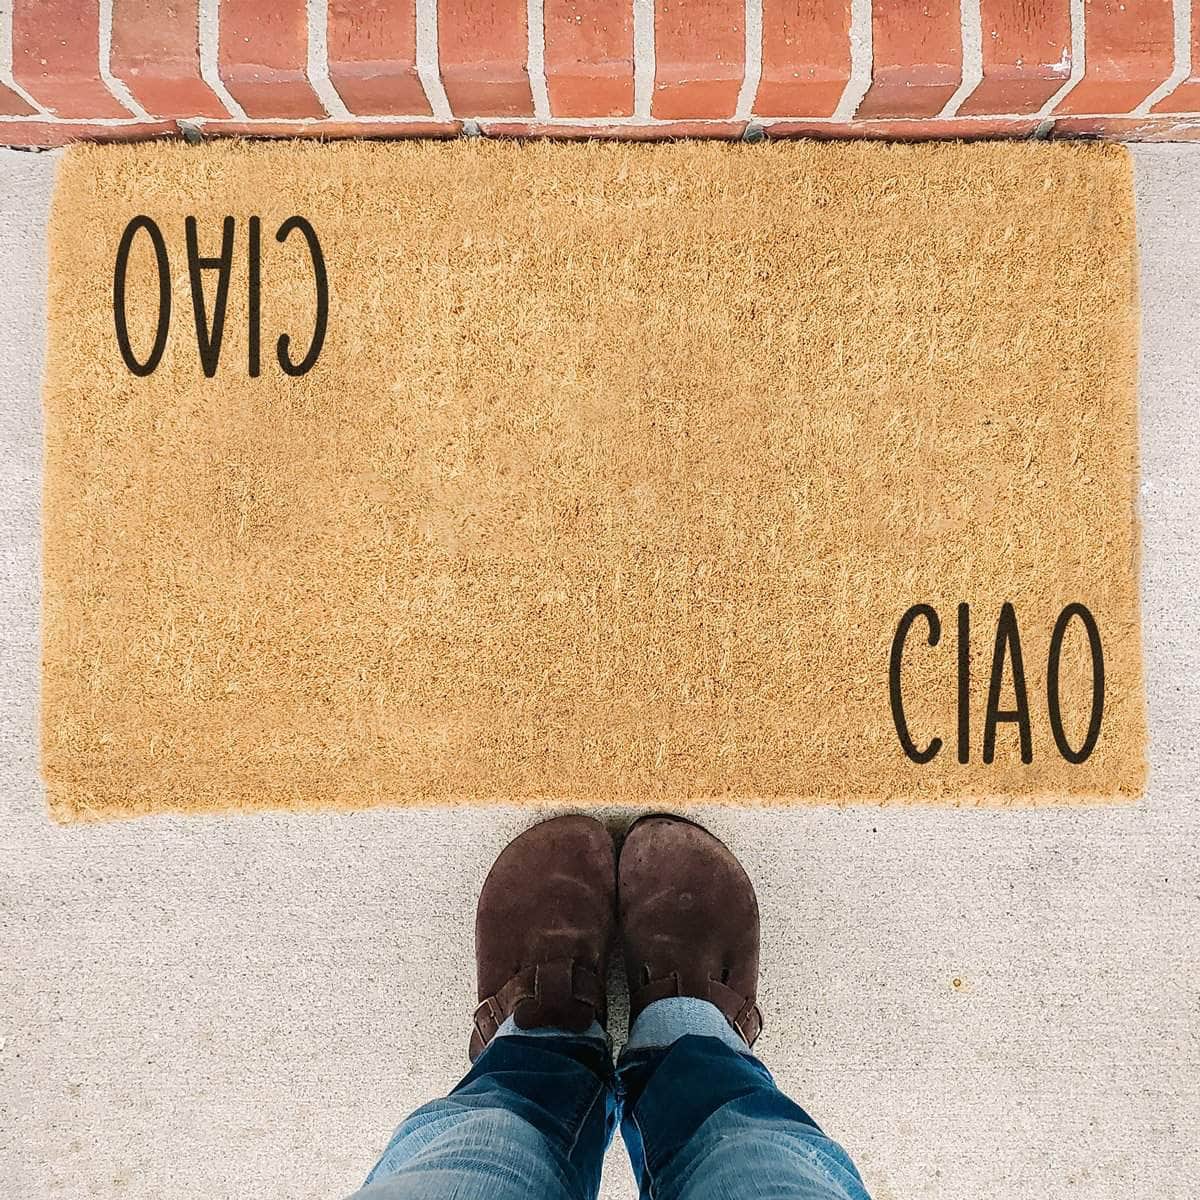 Ciao - Doormat